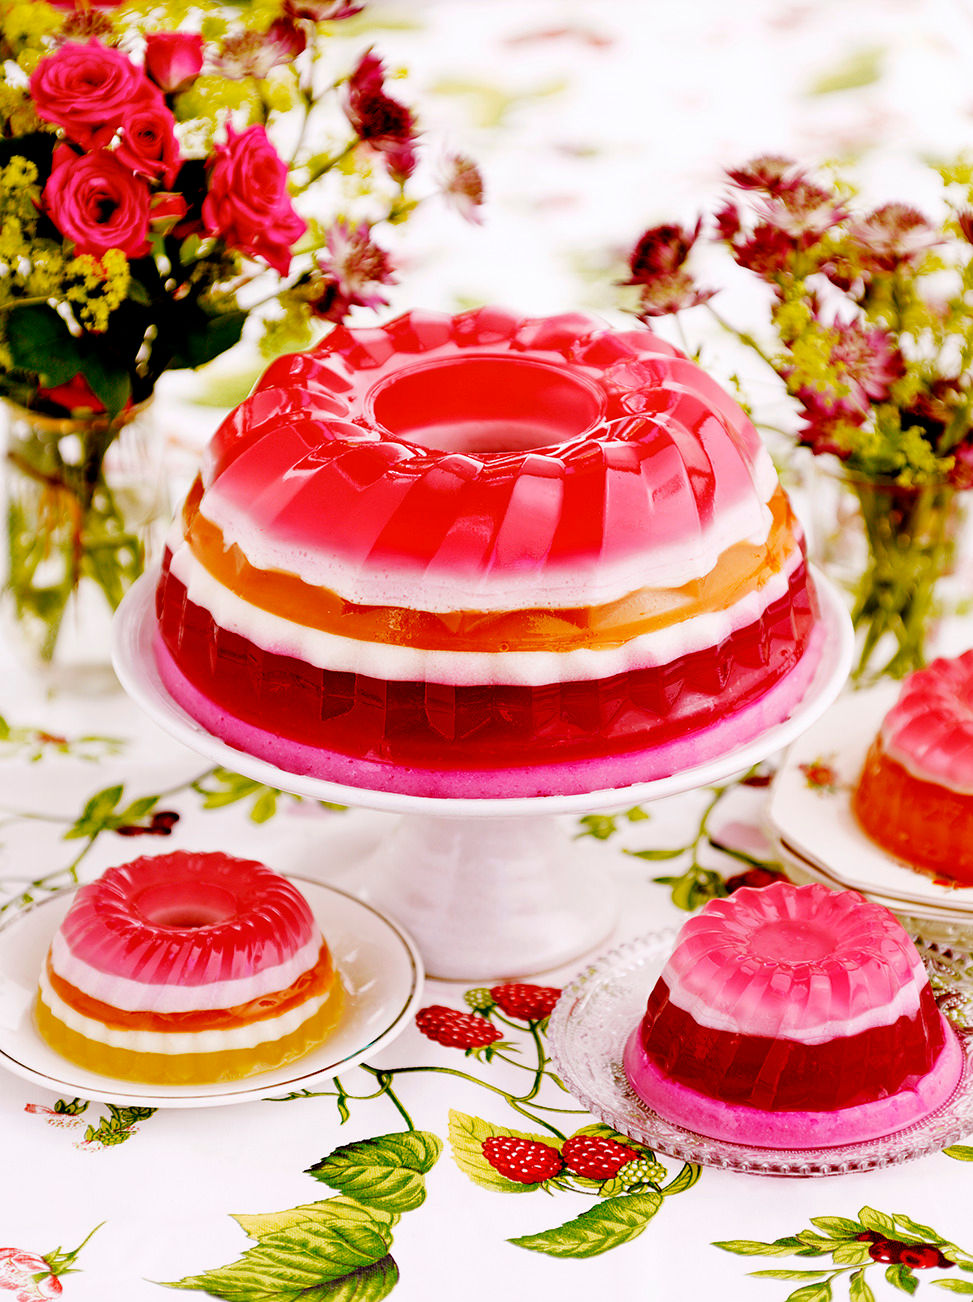 Jelly / agar agar fruit cake, Food & Drinks, Homemade Bakes on Carousell